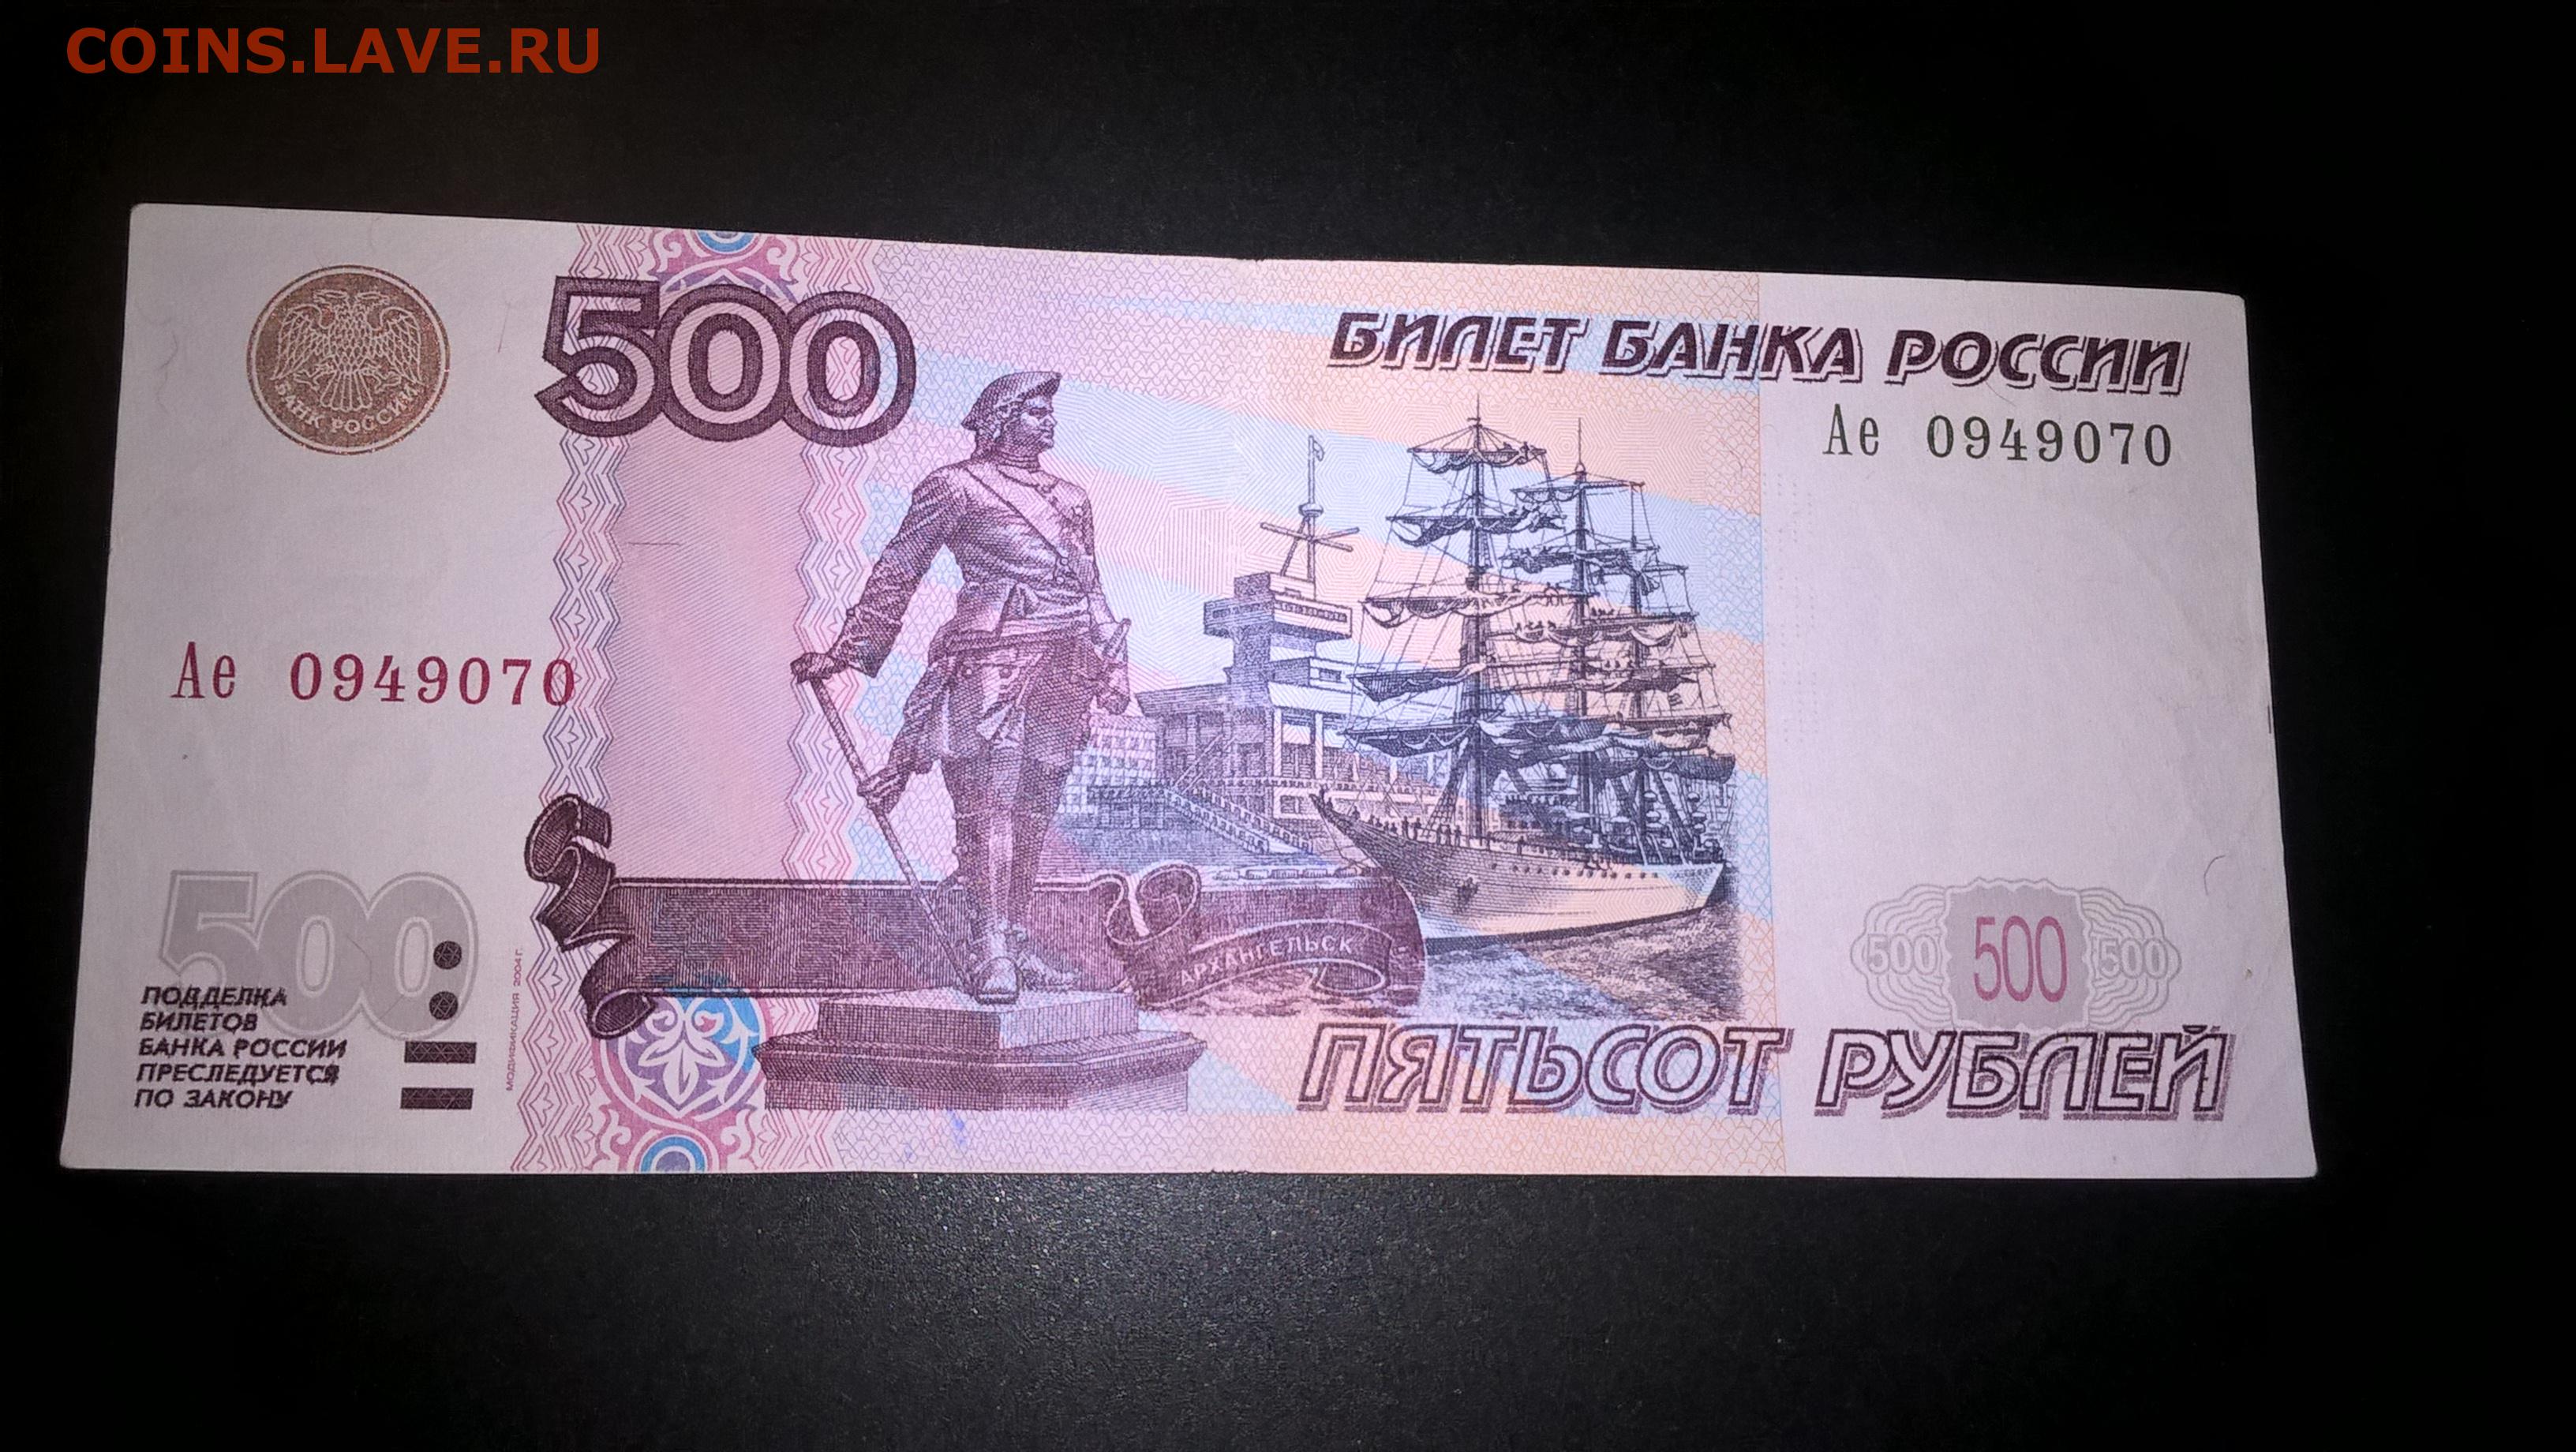 Топ до 500 рублей